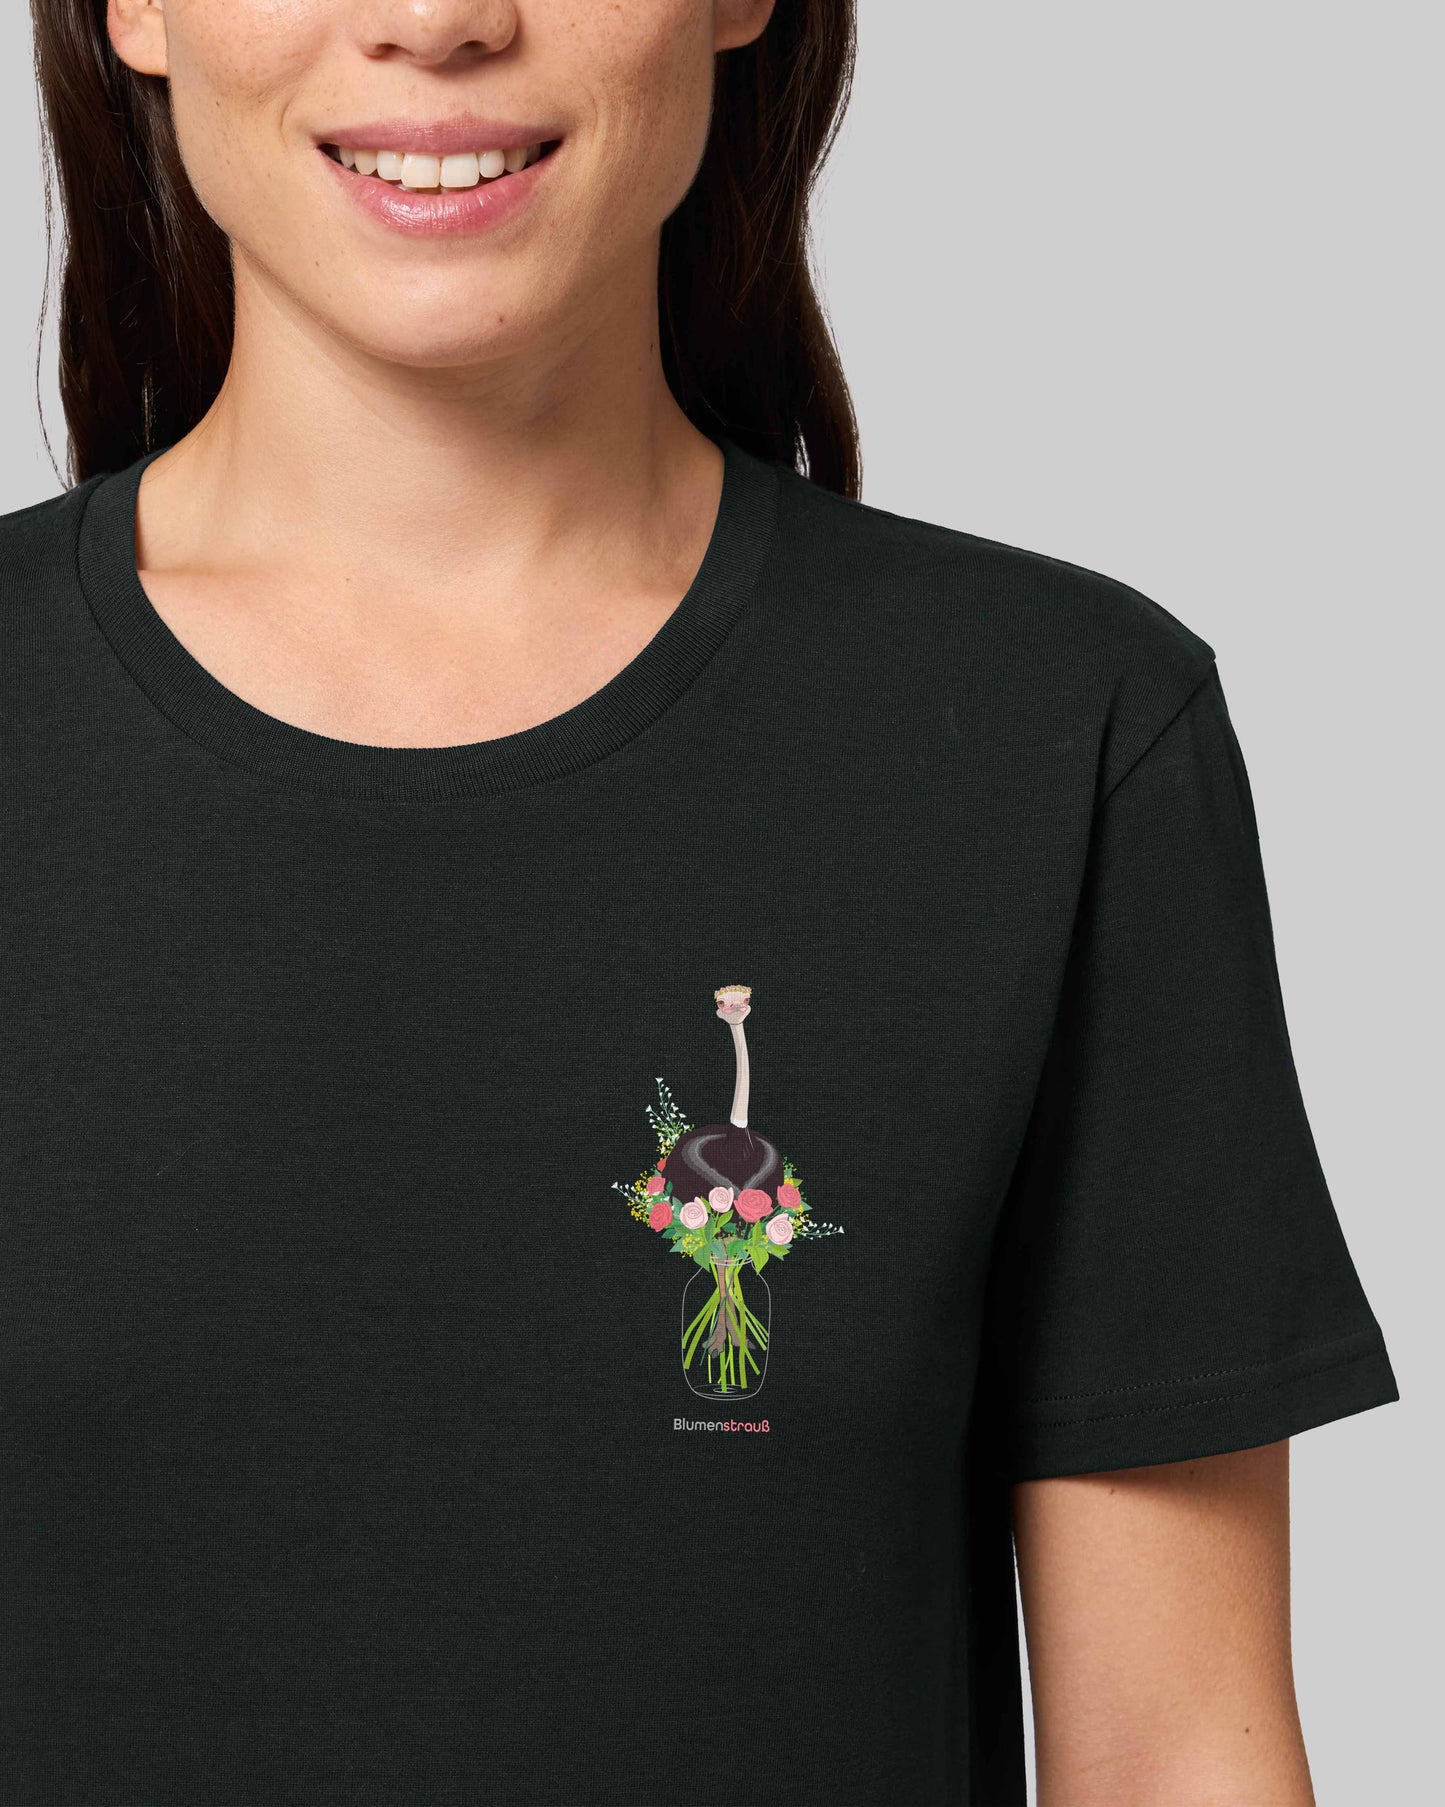 EINHORST® unisex organic Shirt in Schwarz mit dem Motiv "Blumenstrauß", Bild von weiblicher Person mit Shirt